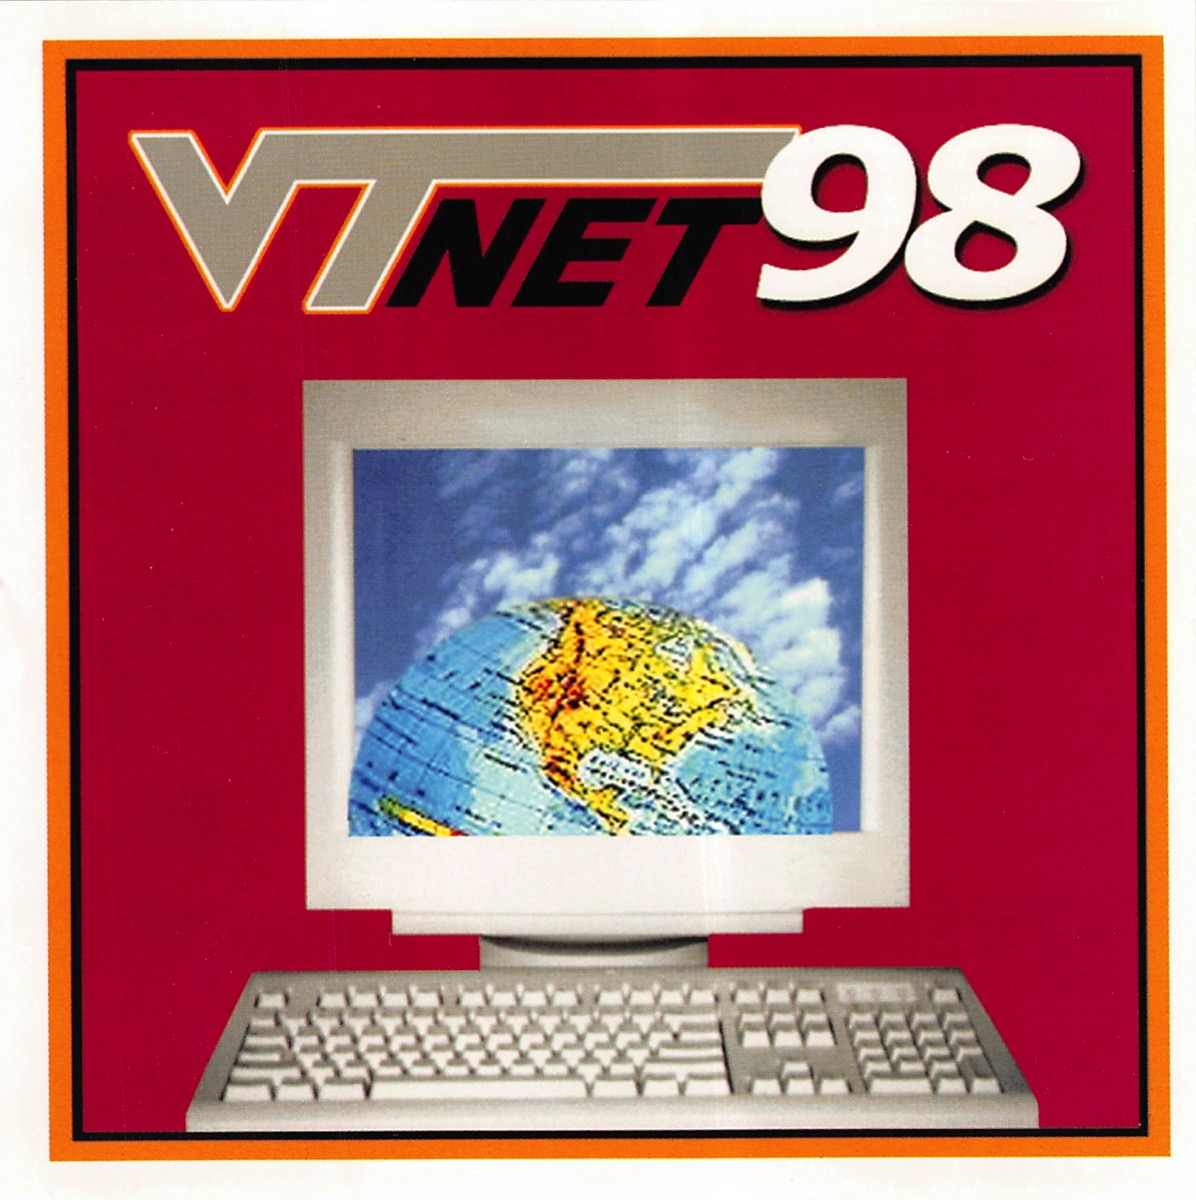 VTnet98